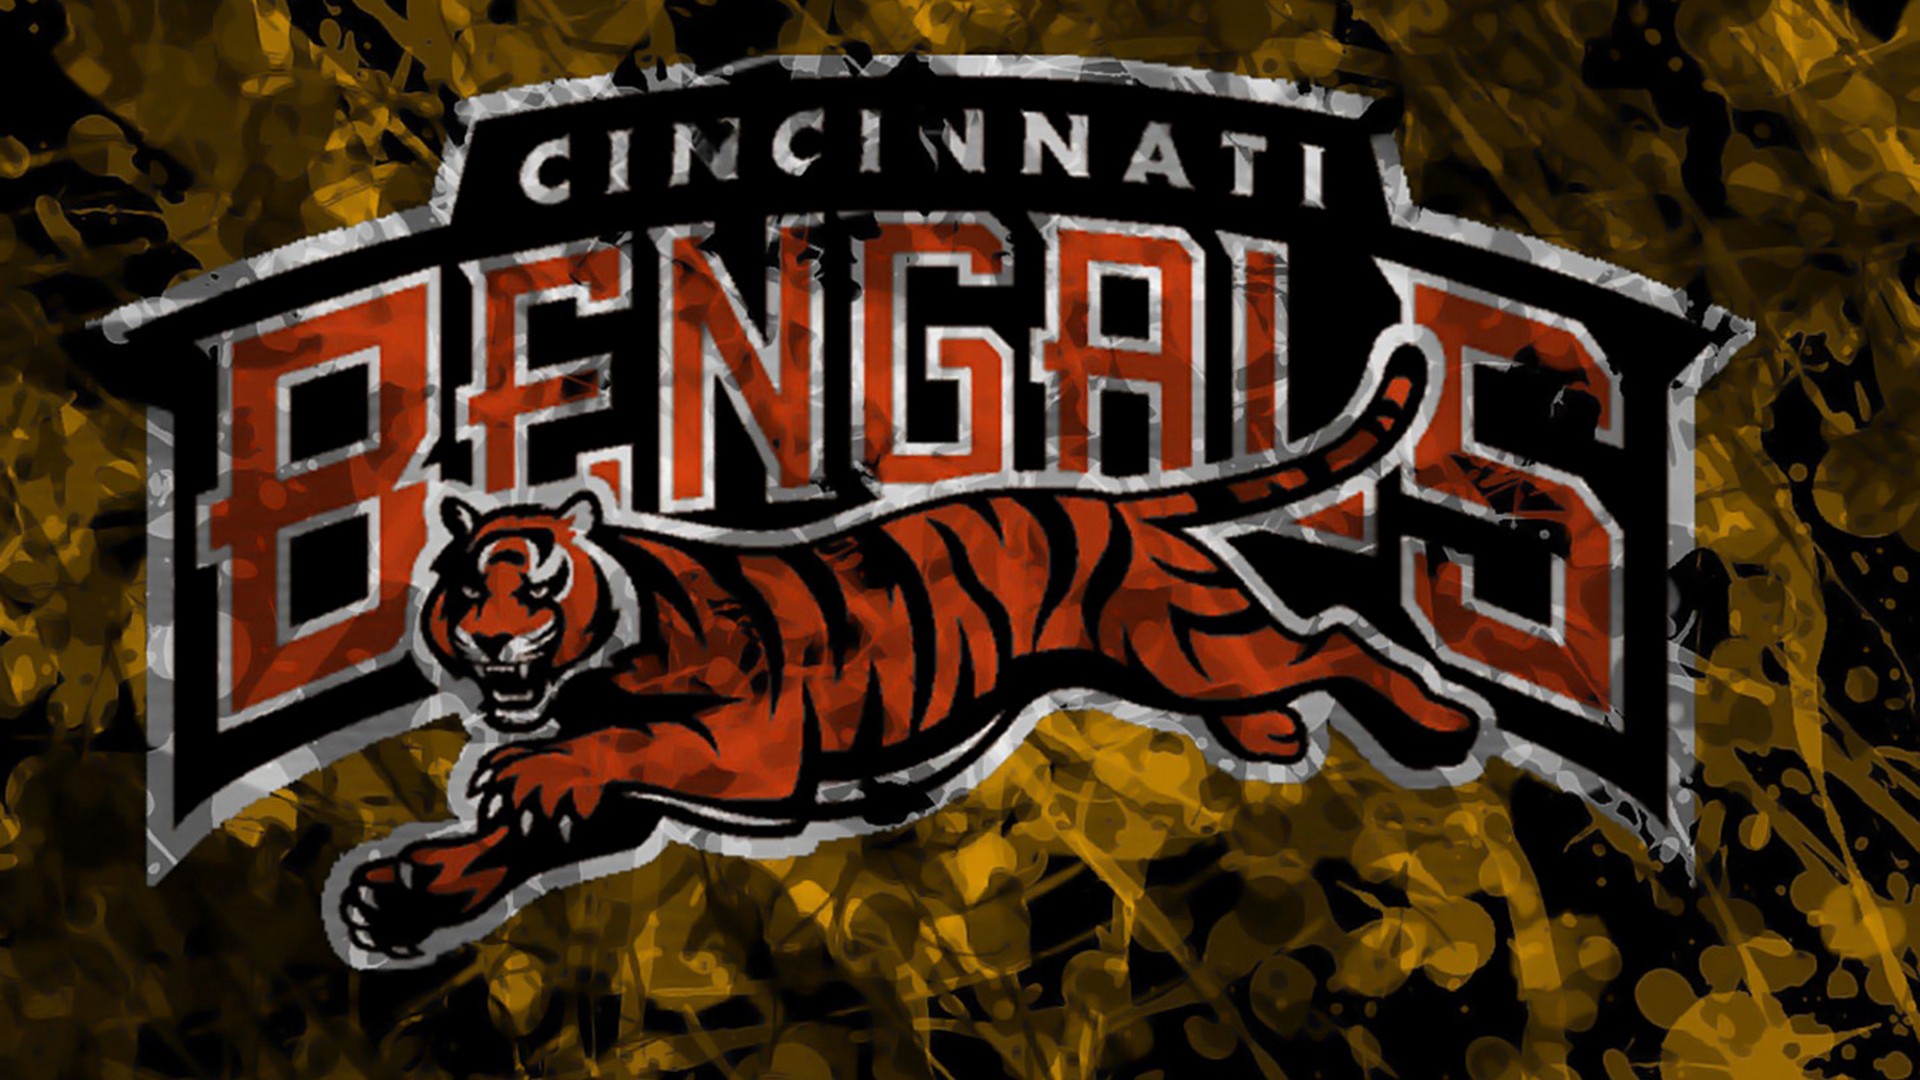 Wallpapers HD Cincinnati Bengals With Resolution 1920X1080